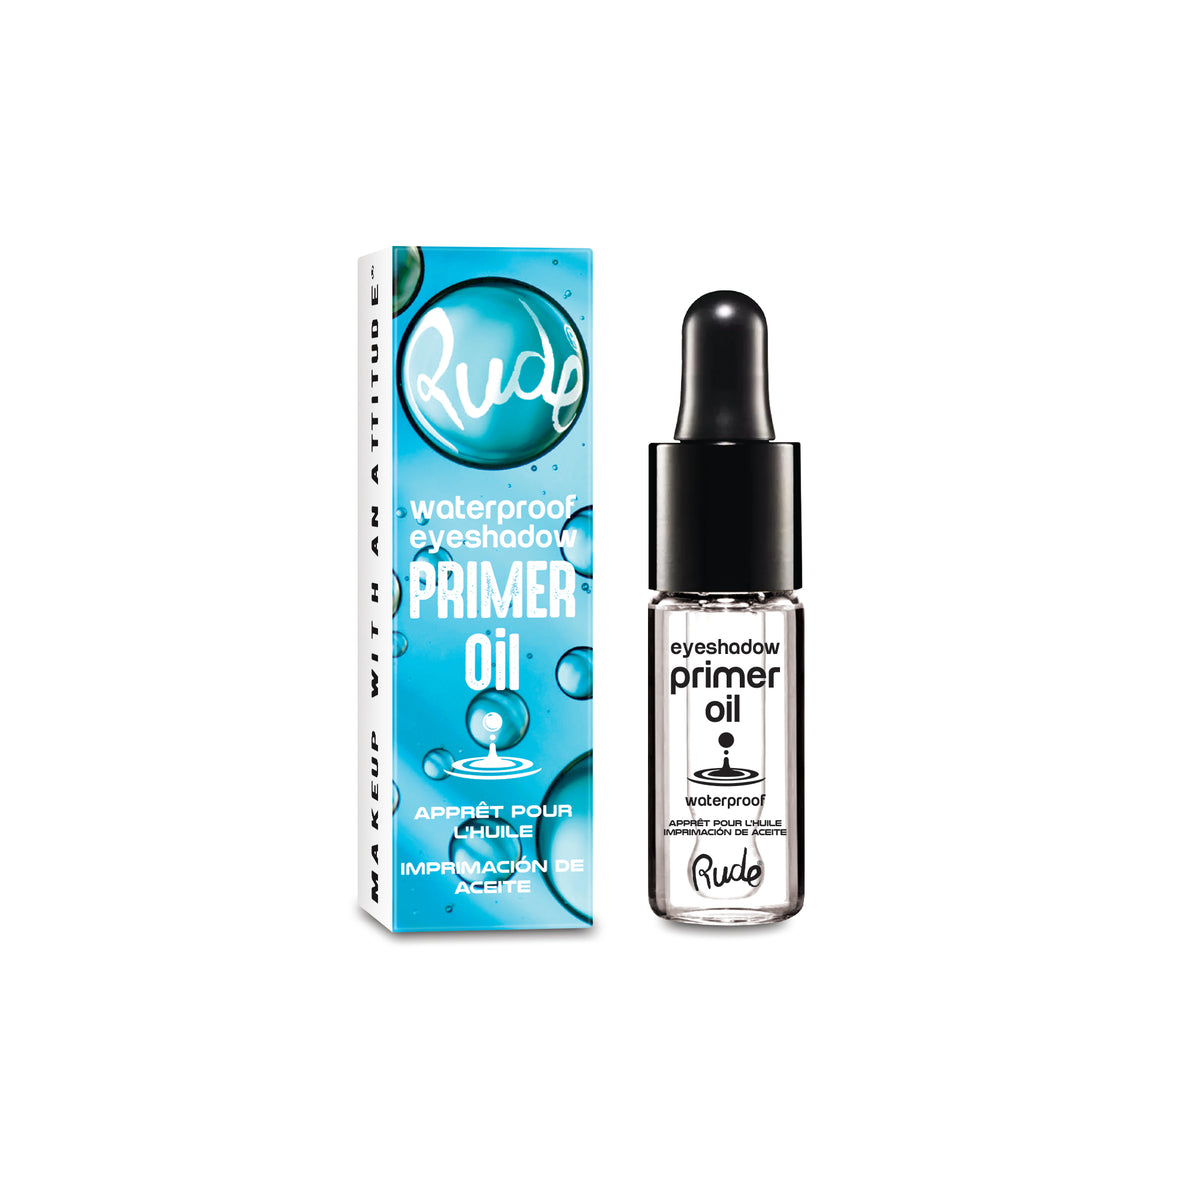 Waterproof Eyeshadow Primer Oil Paper Display, 36pcs